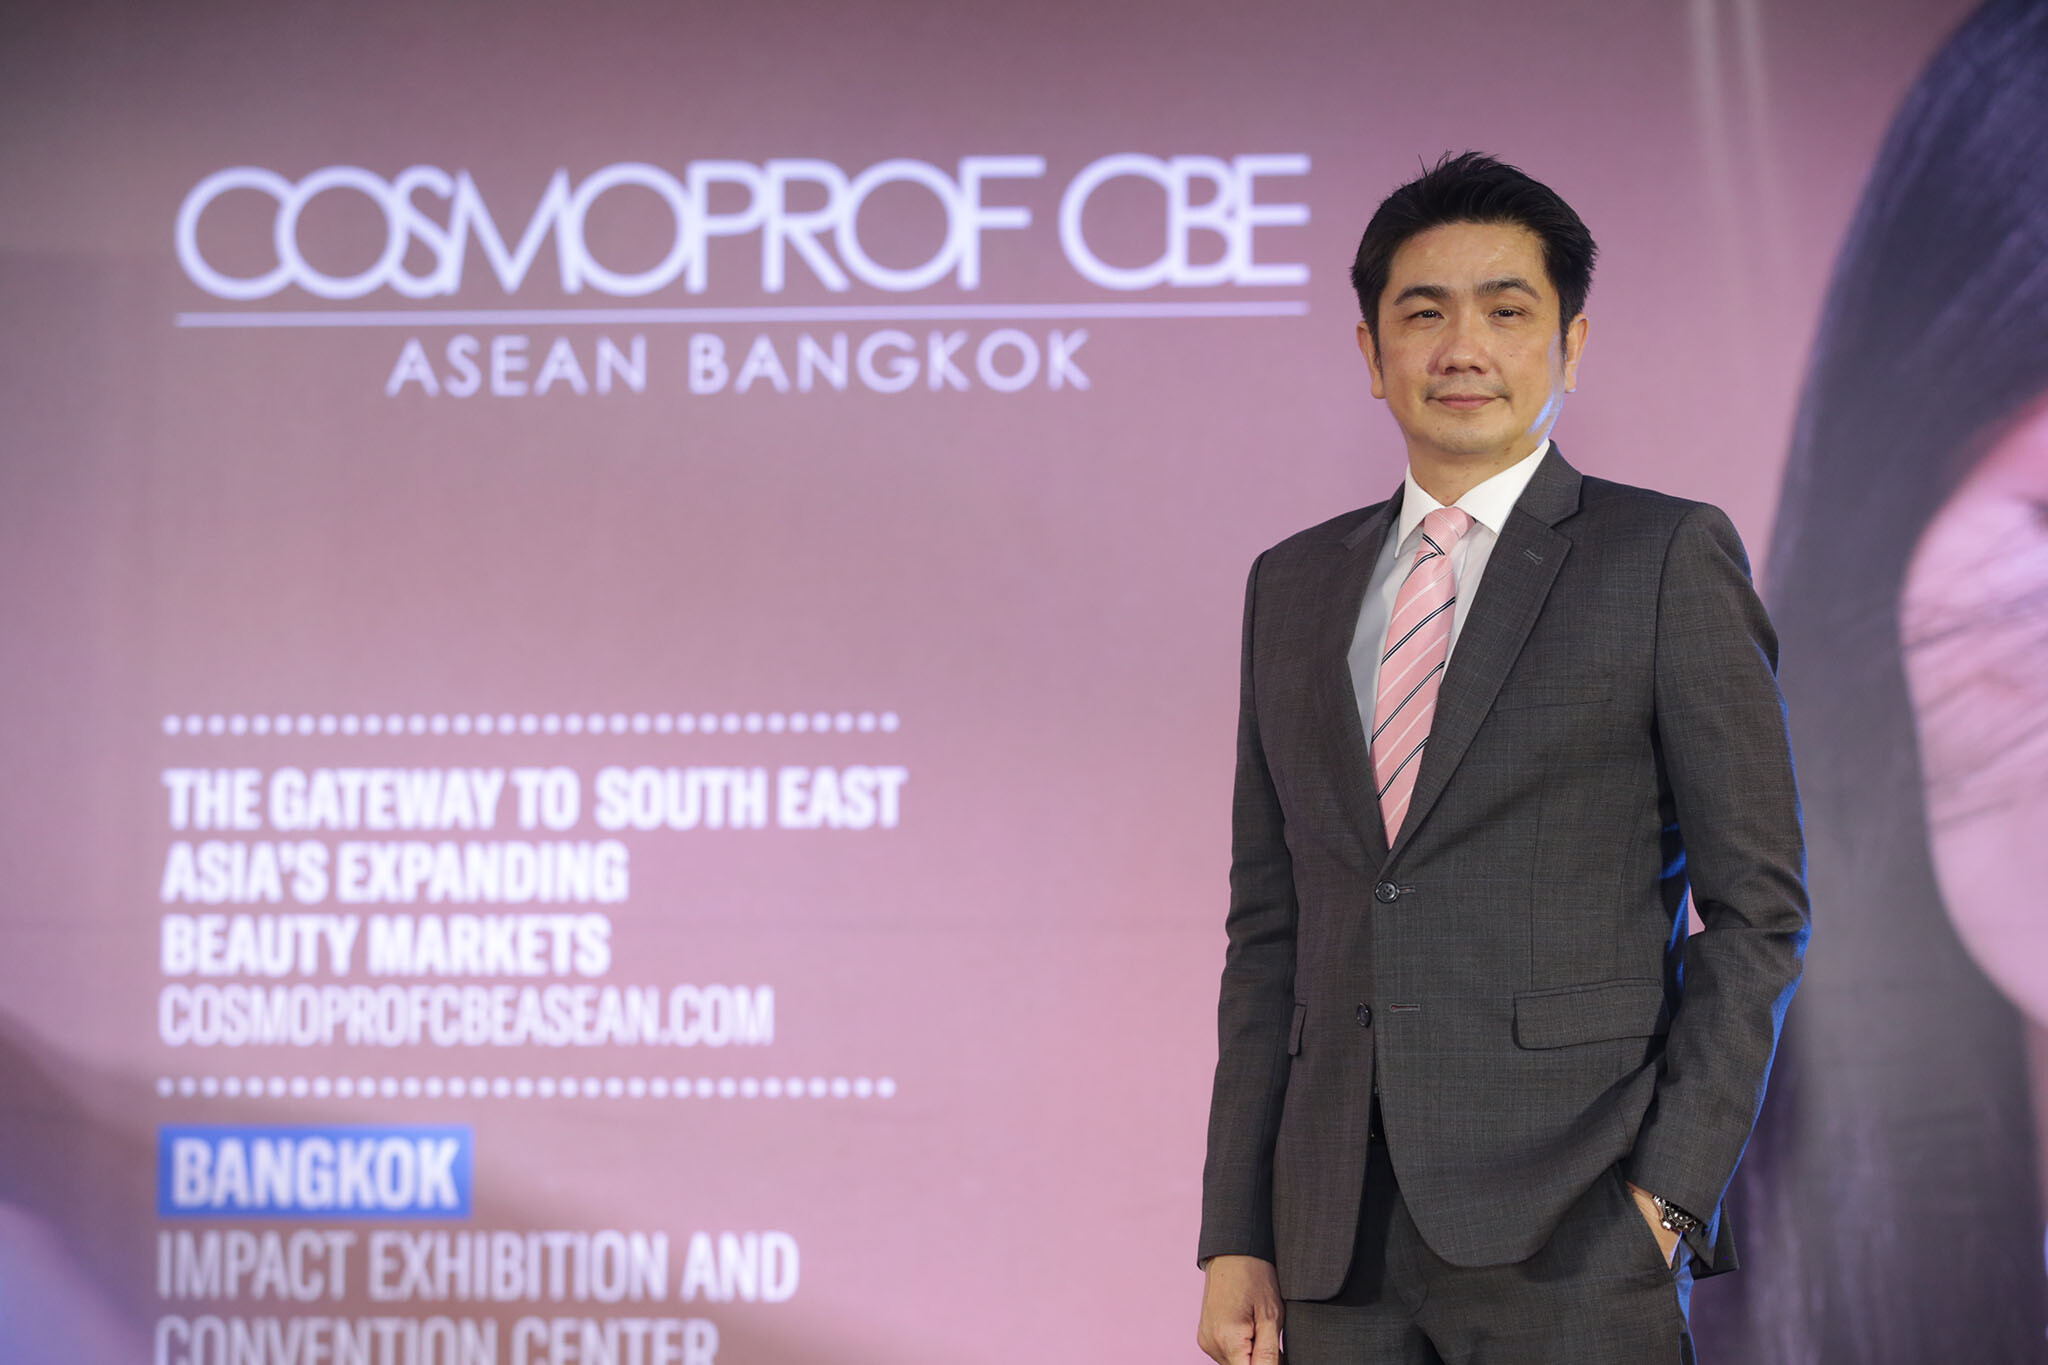 ตลาดเครื่องสำอางคึก แห่เข้าชมงาน COSMOPROF CBE ASEAN มากถึง 8,216 คน พร้อมจับคู่ธุรกิจกว่า 600 คู่ ดันไทยเป็นฮับด้านสุขภาพ-ความงาม อาเซียน